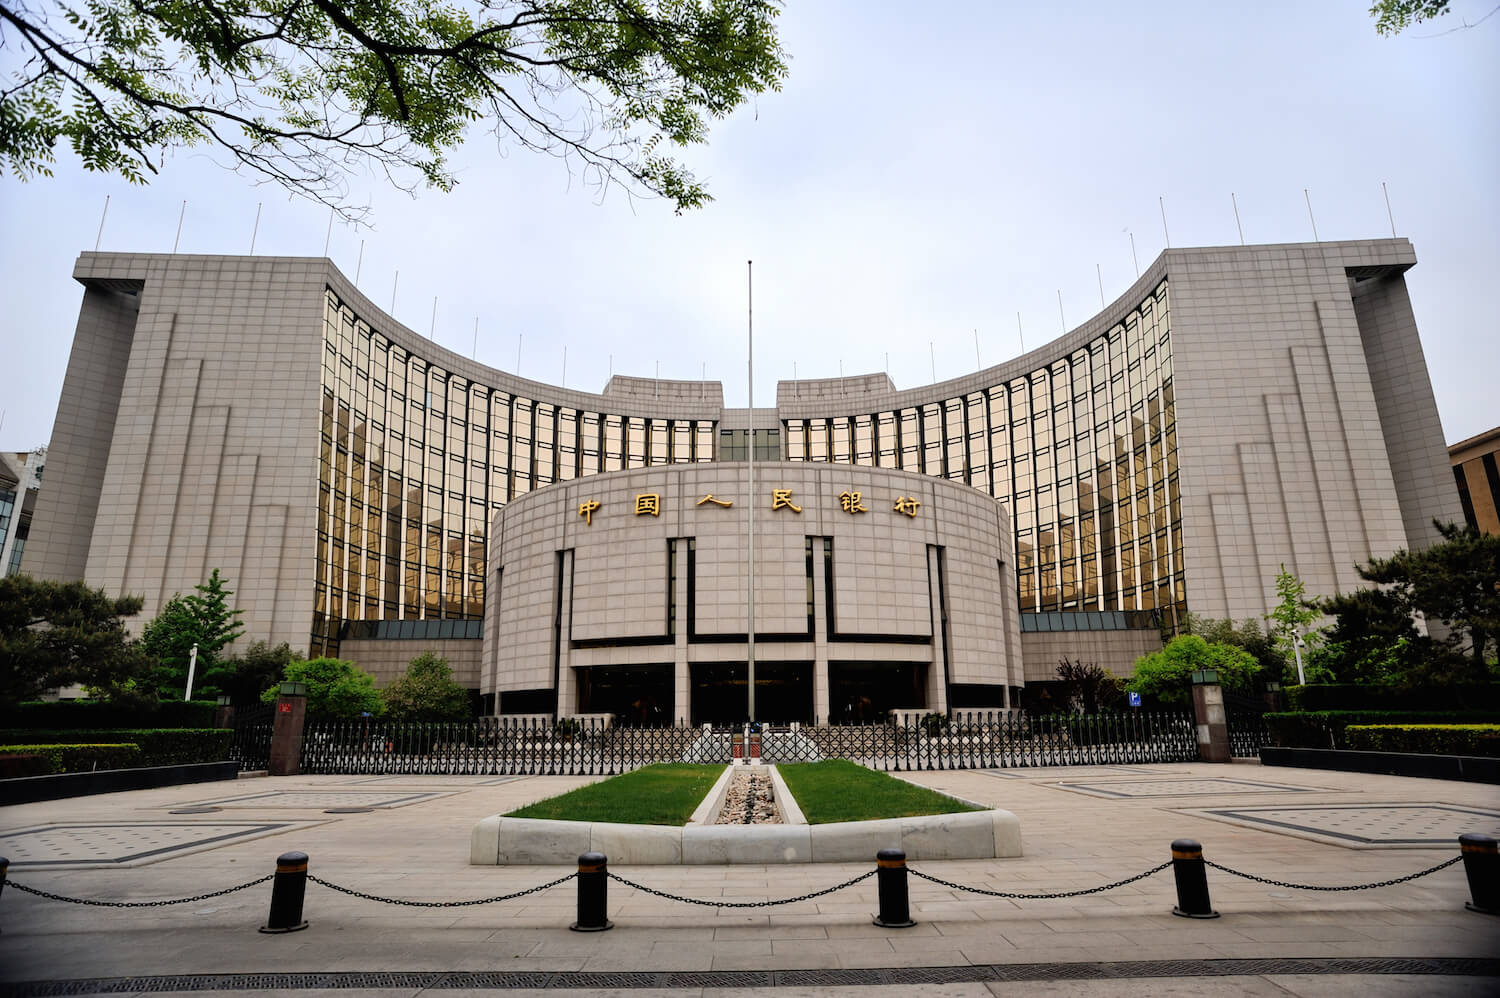 Китайский ЦБ сохранил базовую ставку на уровне 3,85%  